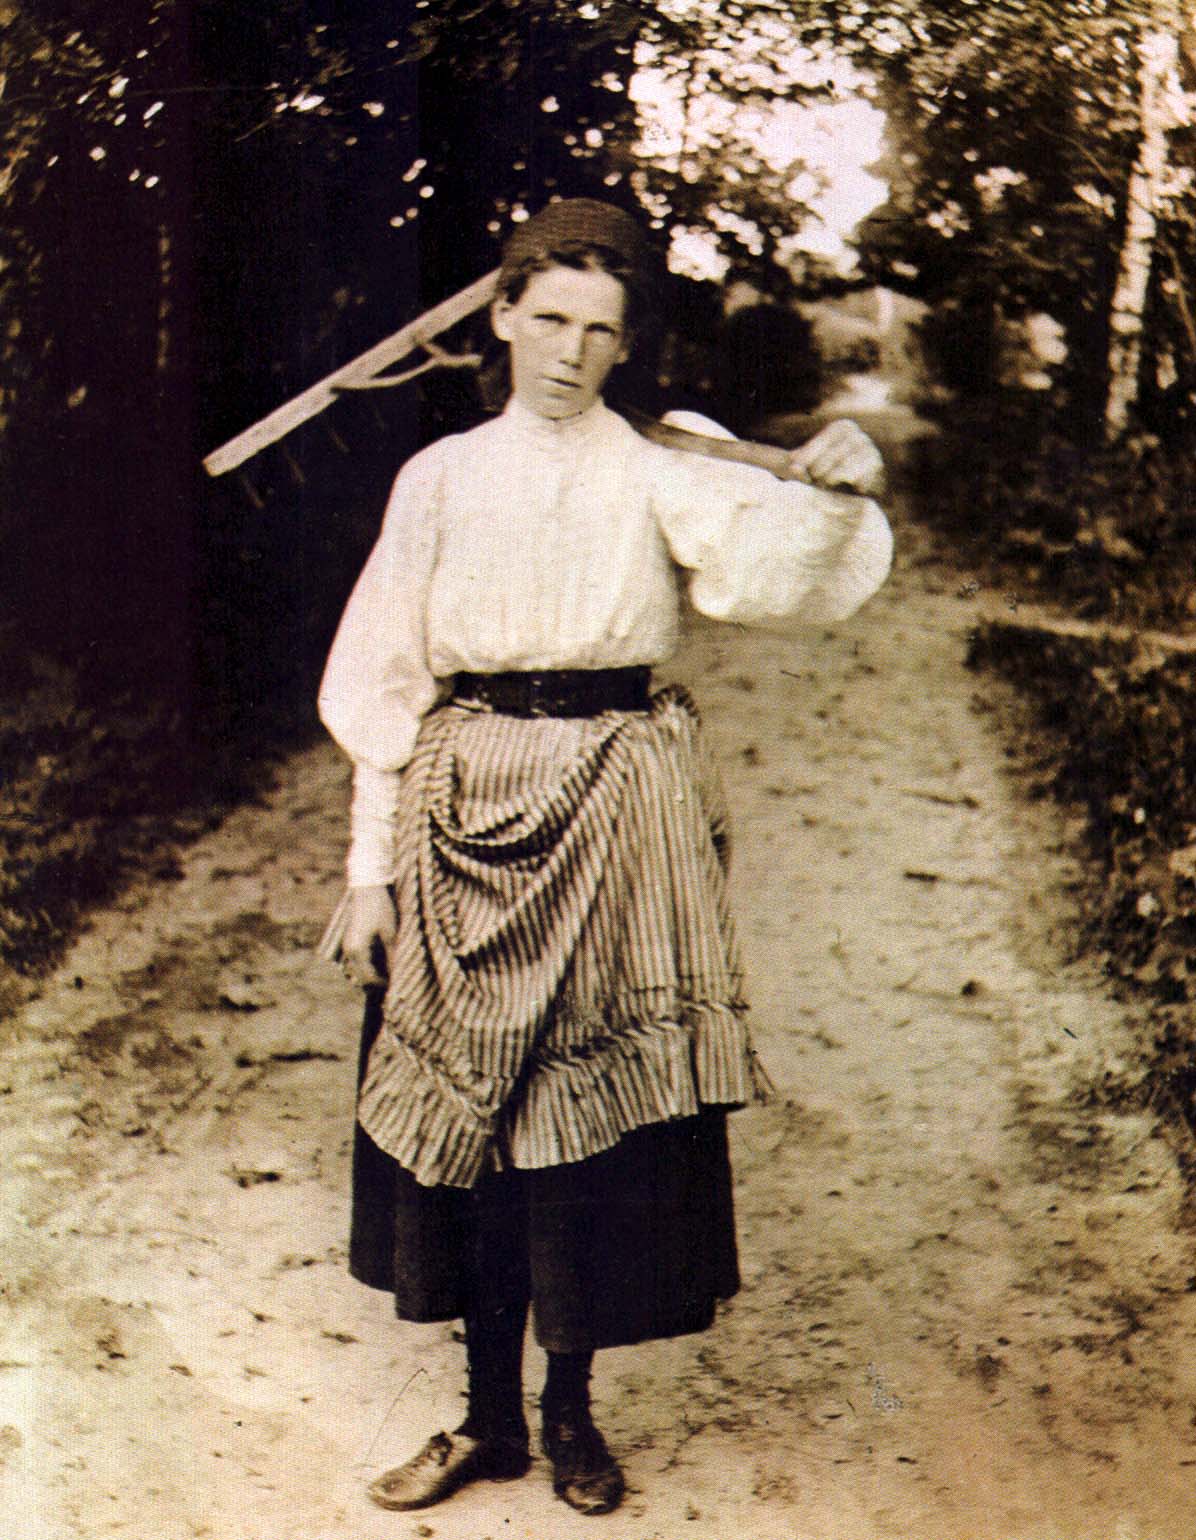 Мария Львовна Толстая (1871-1906), дочь Л.Н. Толстого. Ясная Поляна. Фотография П.И. Бирюкова. 1895 г.